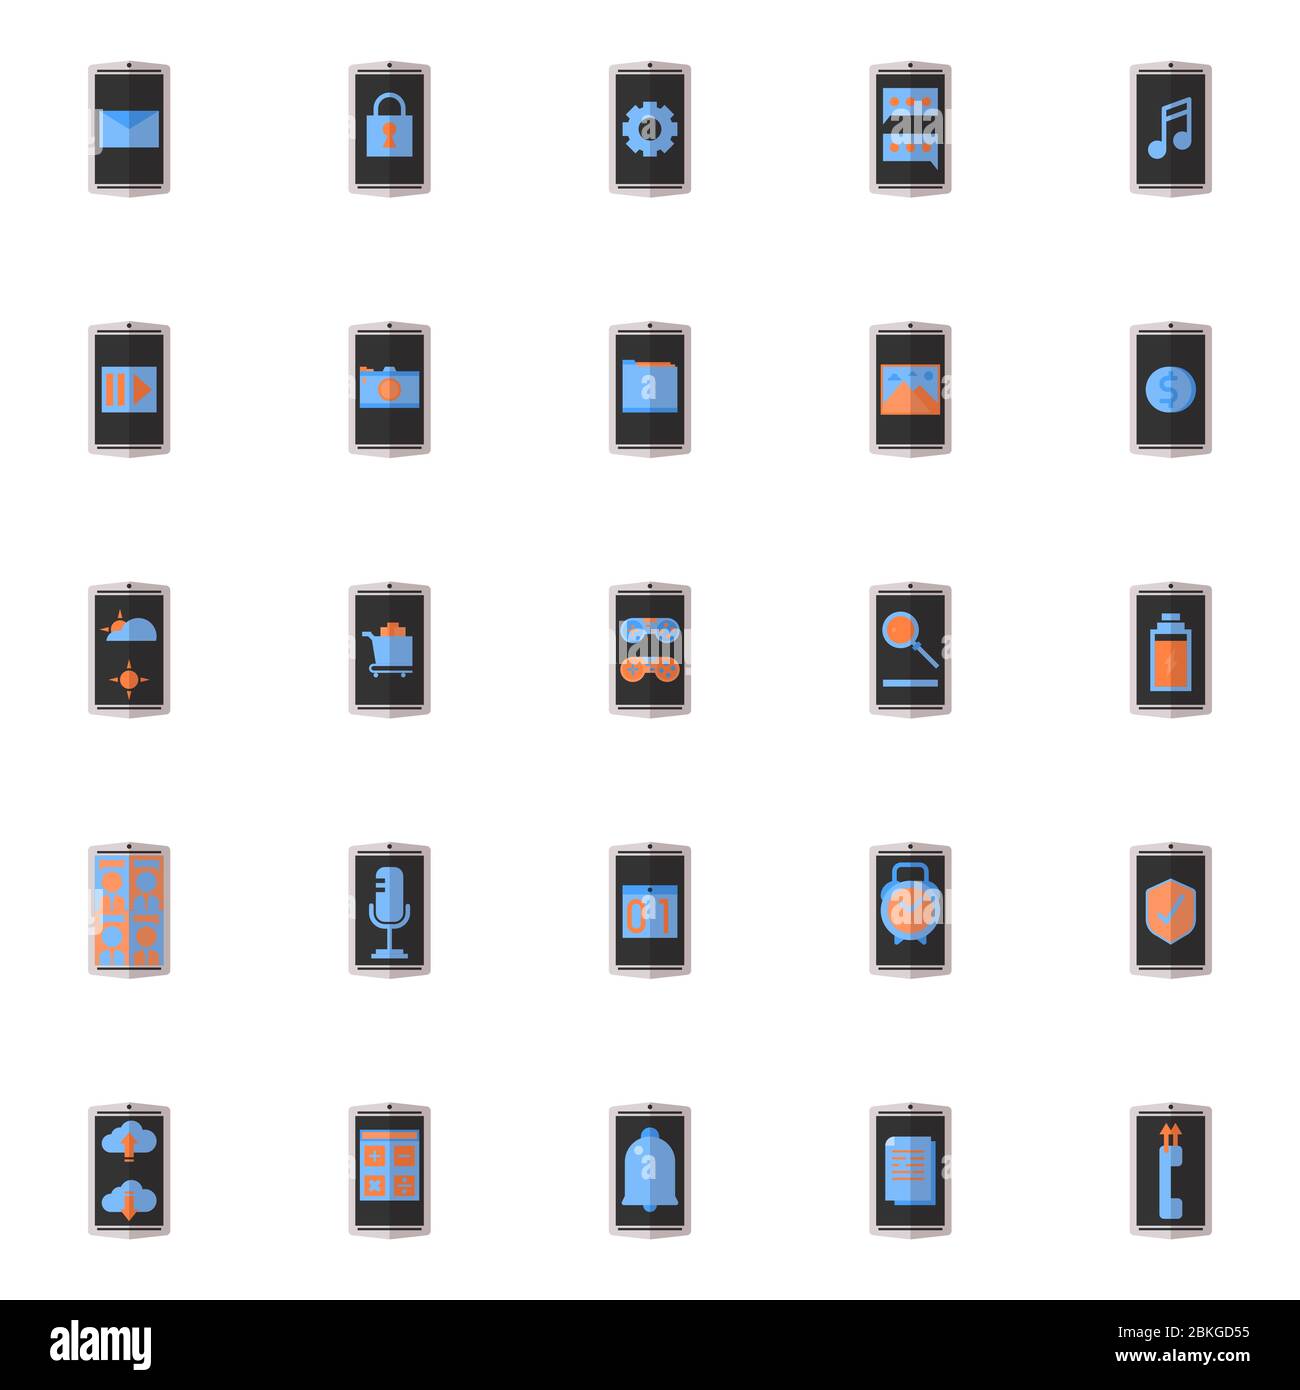 25 icona piatta dell'applicazione per smartphone impostata in grigio, nero, arancione e blu chiaro. Design a icone della moderna tecnologia del telefono cellulare. Illustrazione Vettoriale